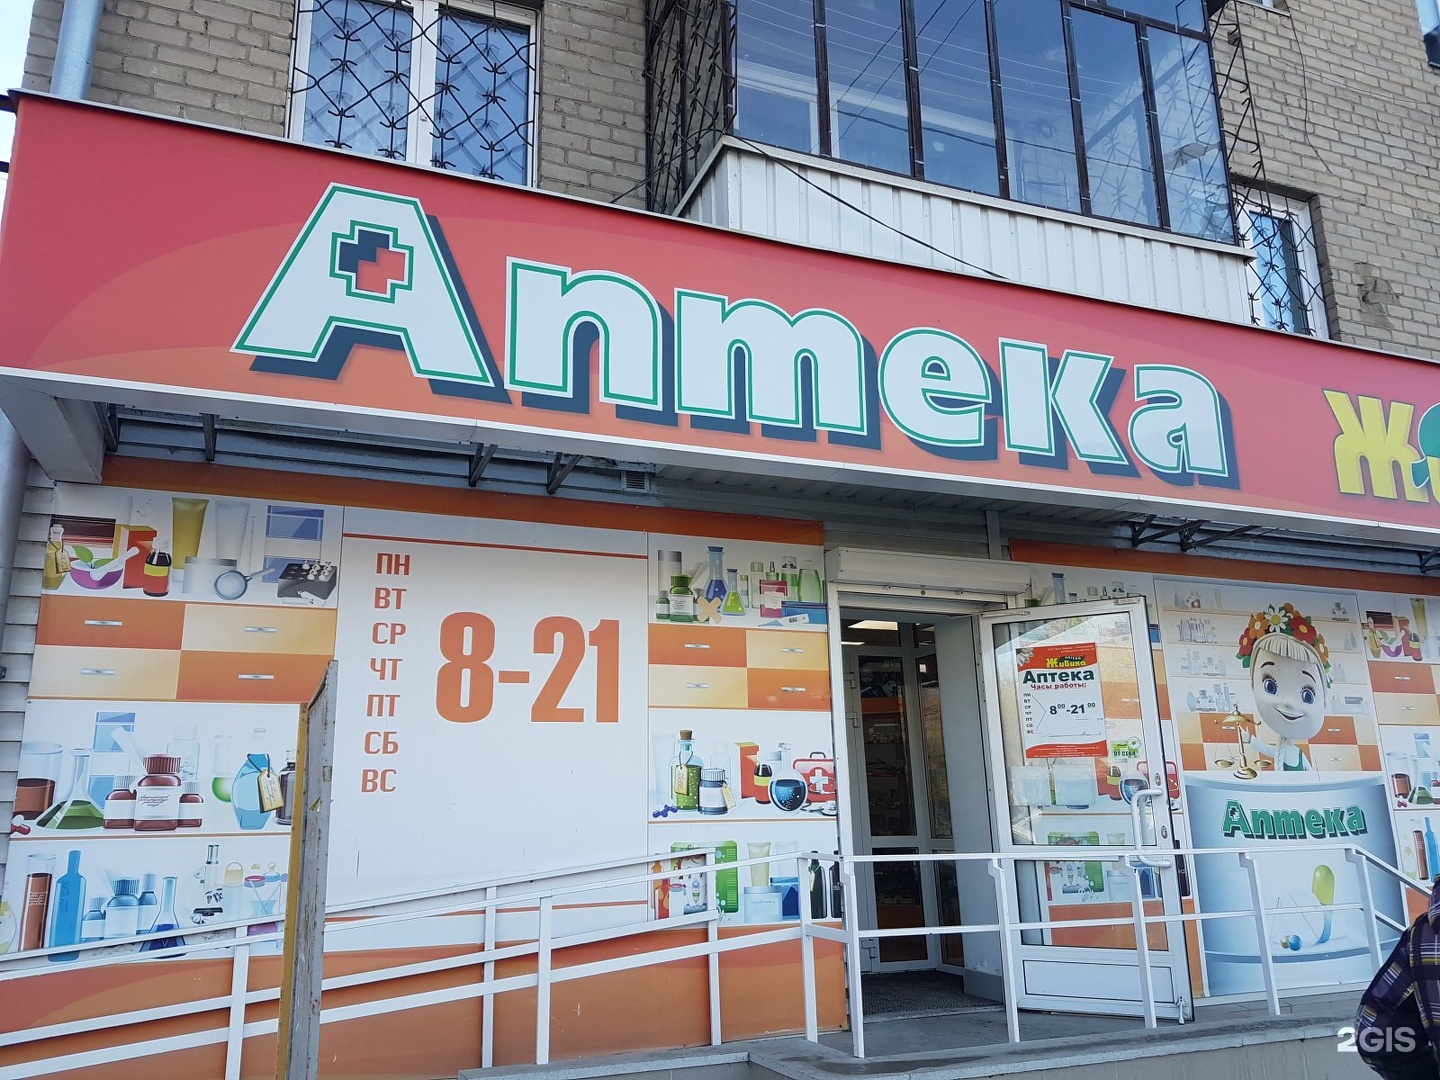 Сеть Аптек Живика В Челябинске